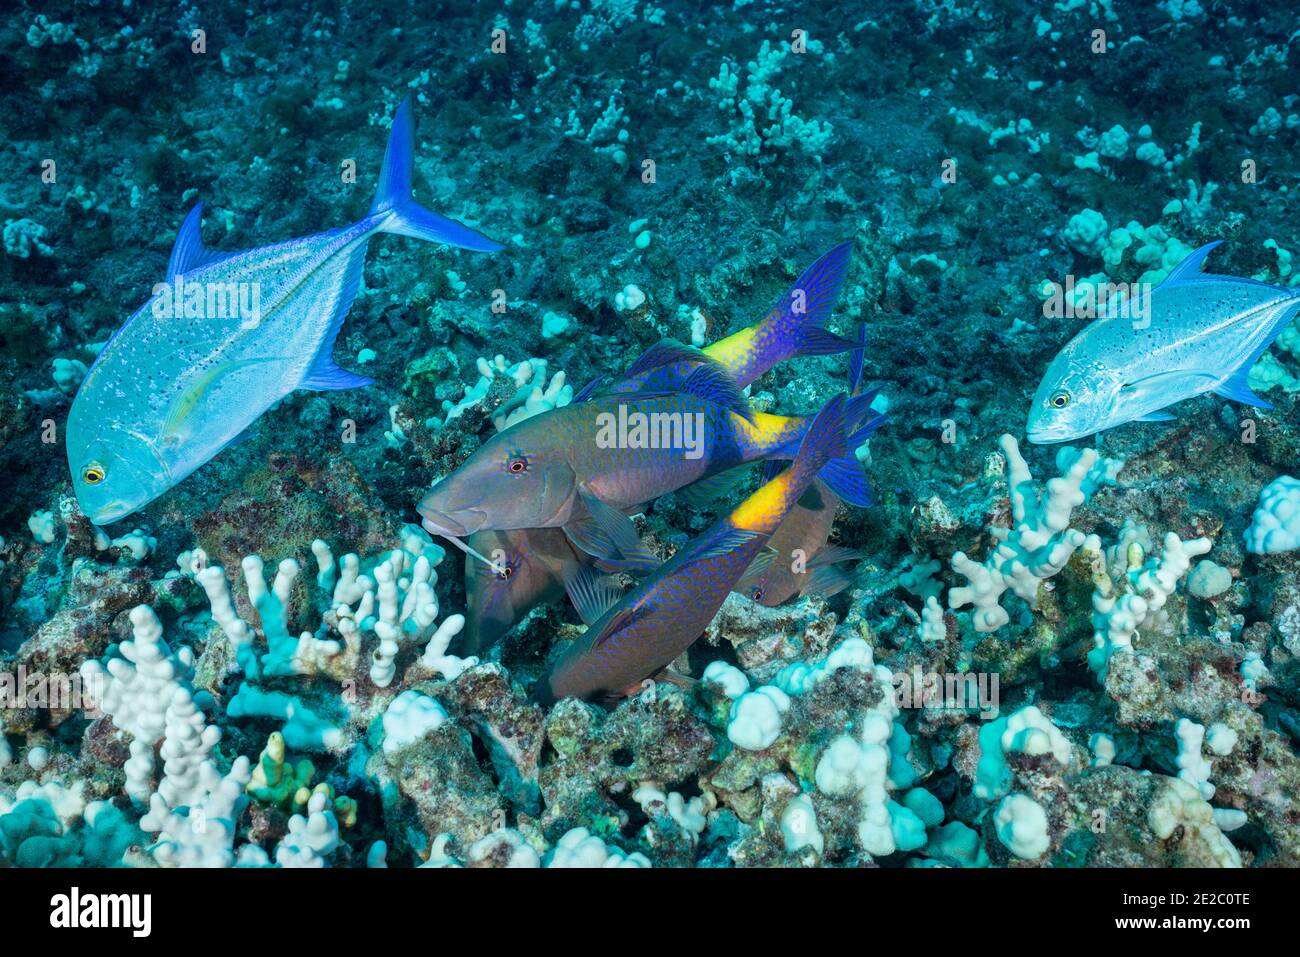 Caccia coalizione di goatfish blu e rosso trevally; Jacks seguire il goatfish per prendere qualsiasi preda che il goatfish scarico dal corallo, Hawaii Foto Stock